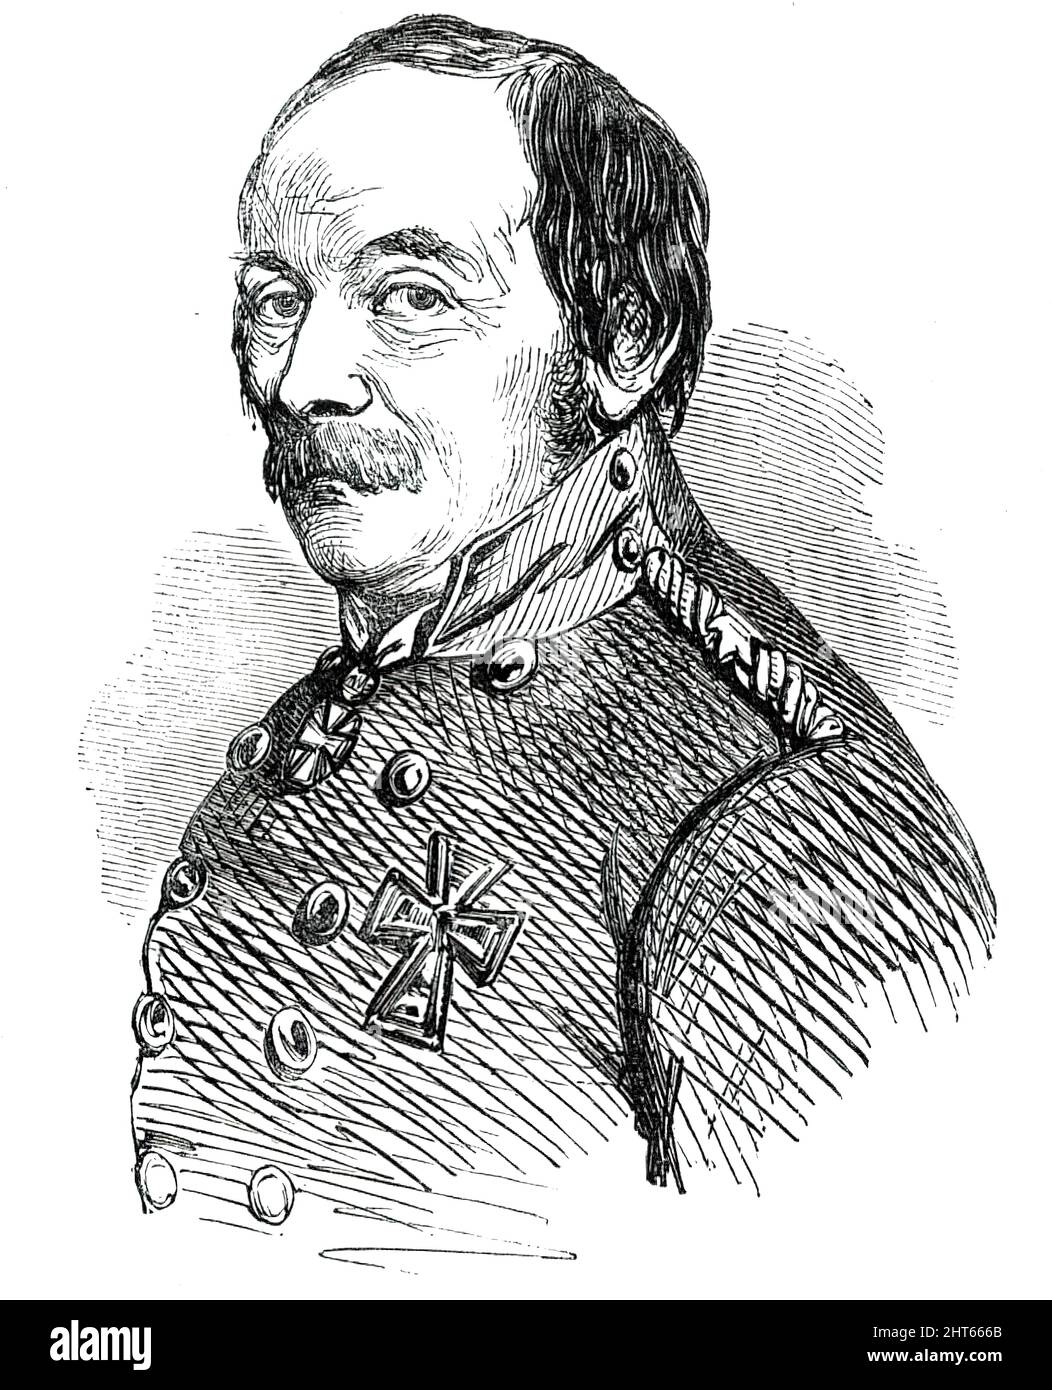 Le général Schleppegrell, tué dans la bataille d'ID TADT [Isted], 1850. Portrait d'un dessin de M. Baugniet. Ce soldat galant, qui est tombé dans la bataille d'Idstadt, sur le 25th ult., était le favori de l'armée danoise, et a contribué principalement à la défaite totale des Schleswig-Holsteiners dans la tempête de leurs enchâssements à Fredericia. C'était un homme vraiment courageux, et il a rencontré la mort d'un héros tout en menant ses soldats galants à la victoire ». De "Illustrated London News", 1850. Banque D'Images